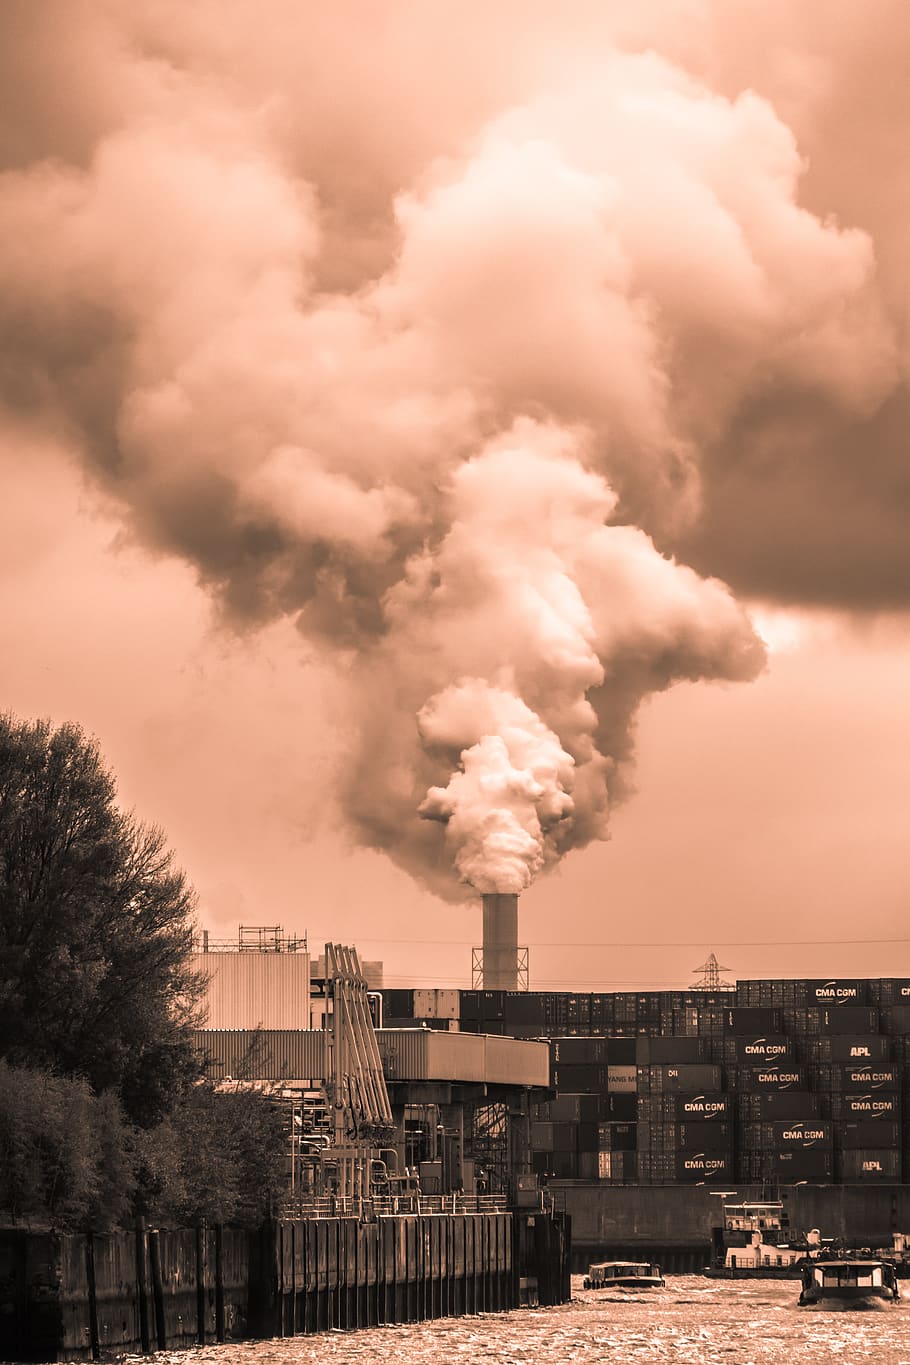 cerobong asap, industri, polusi, pabrik industri, perlindungan lingkungan, lingkungan, pabrik, uap, gas buang, asap